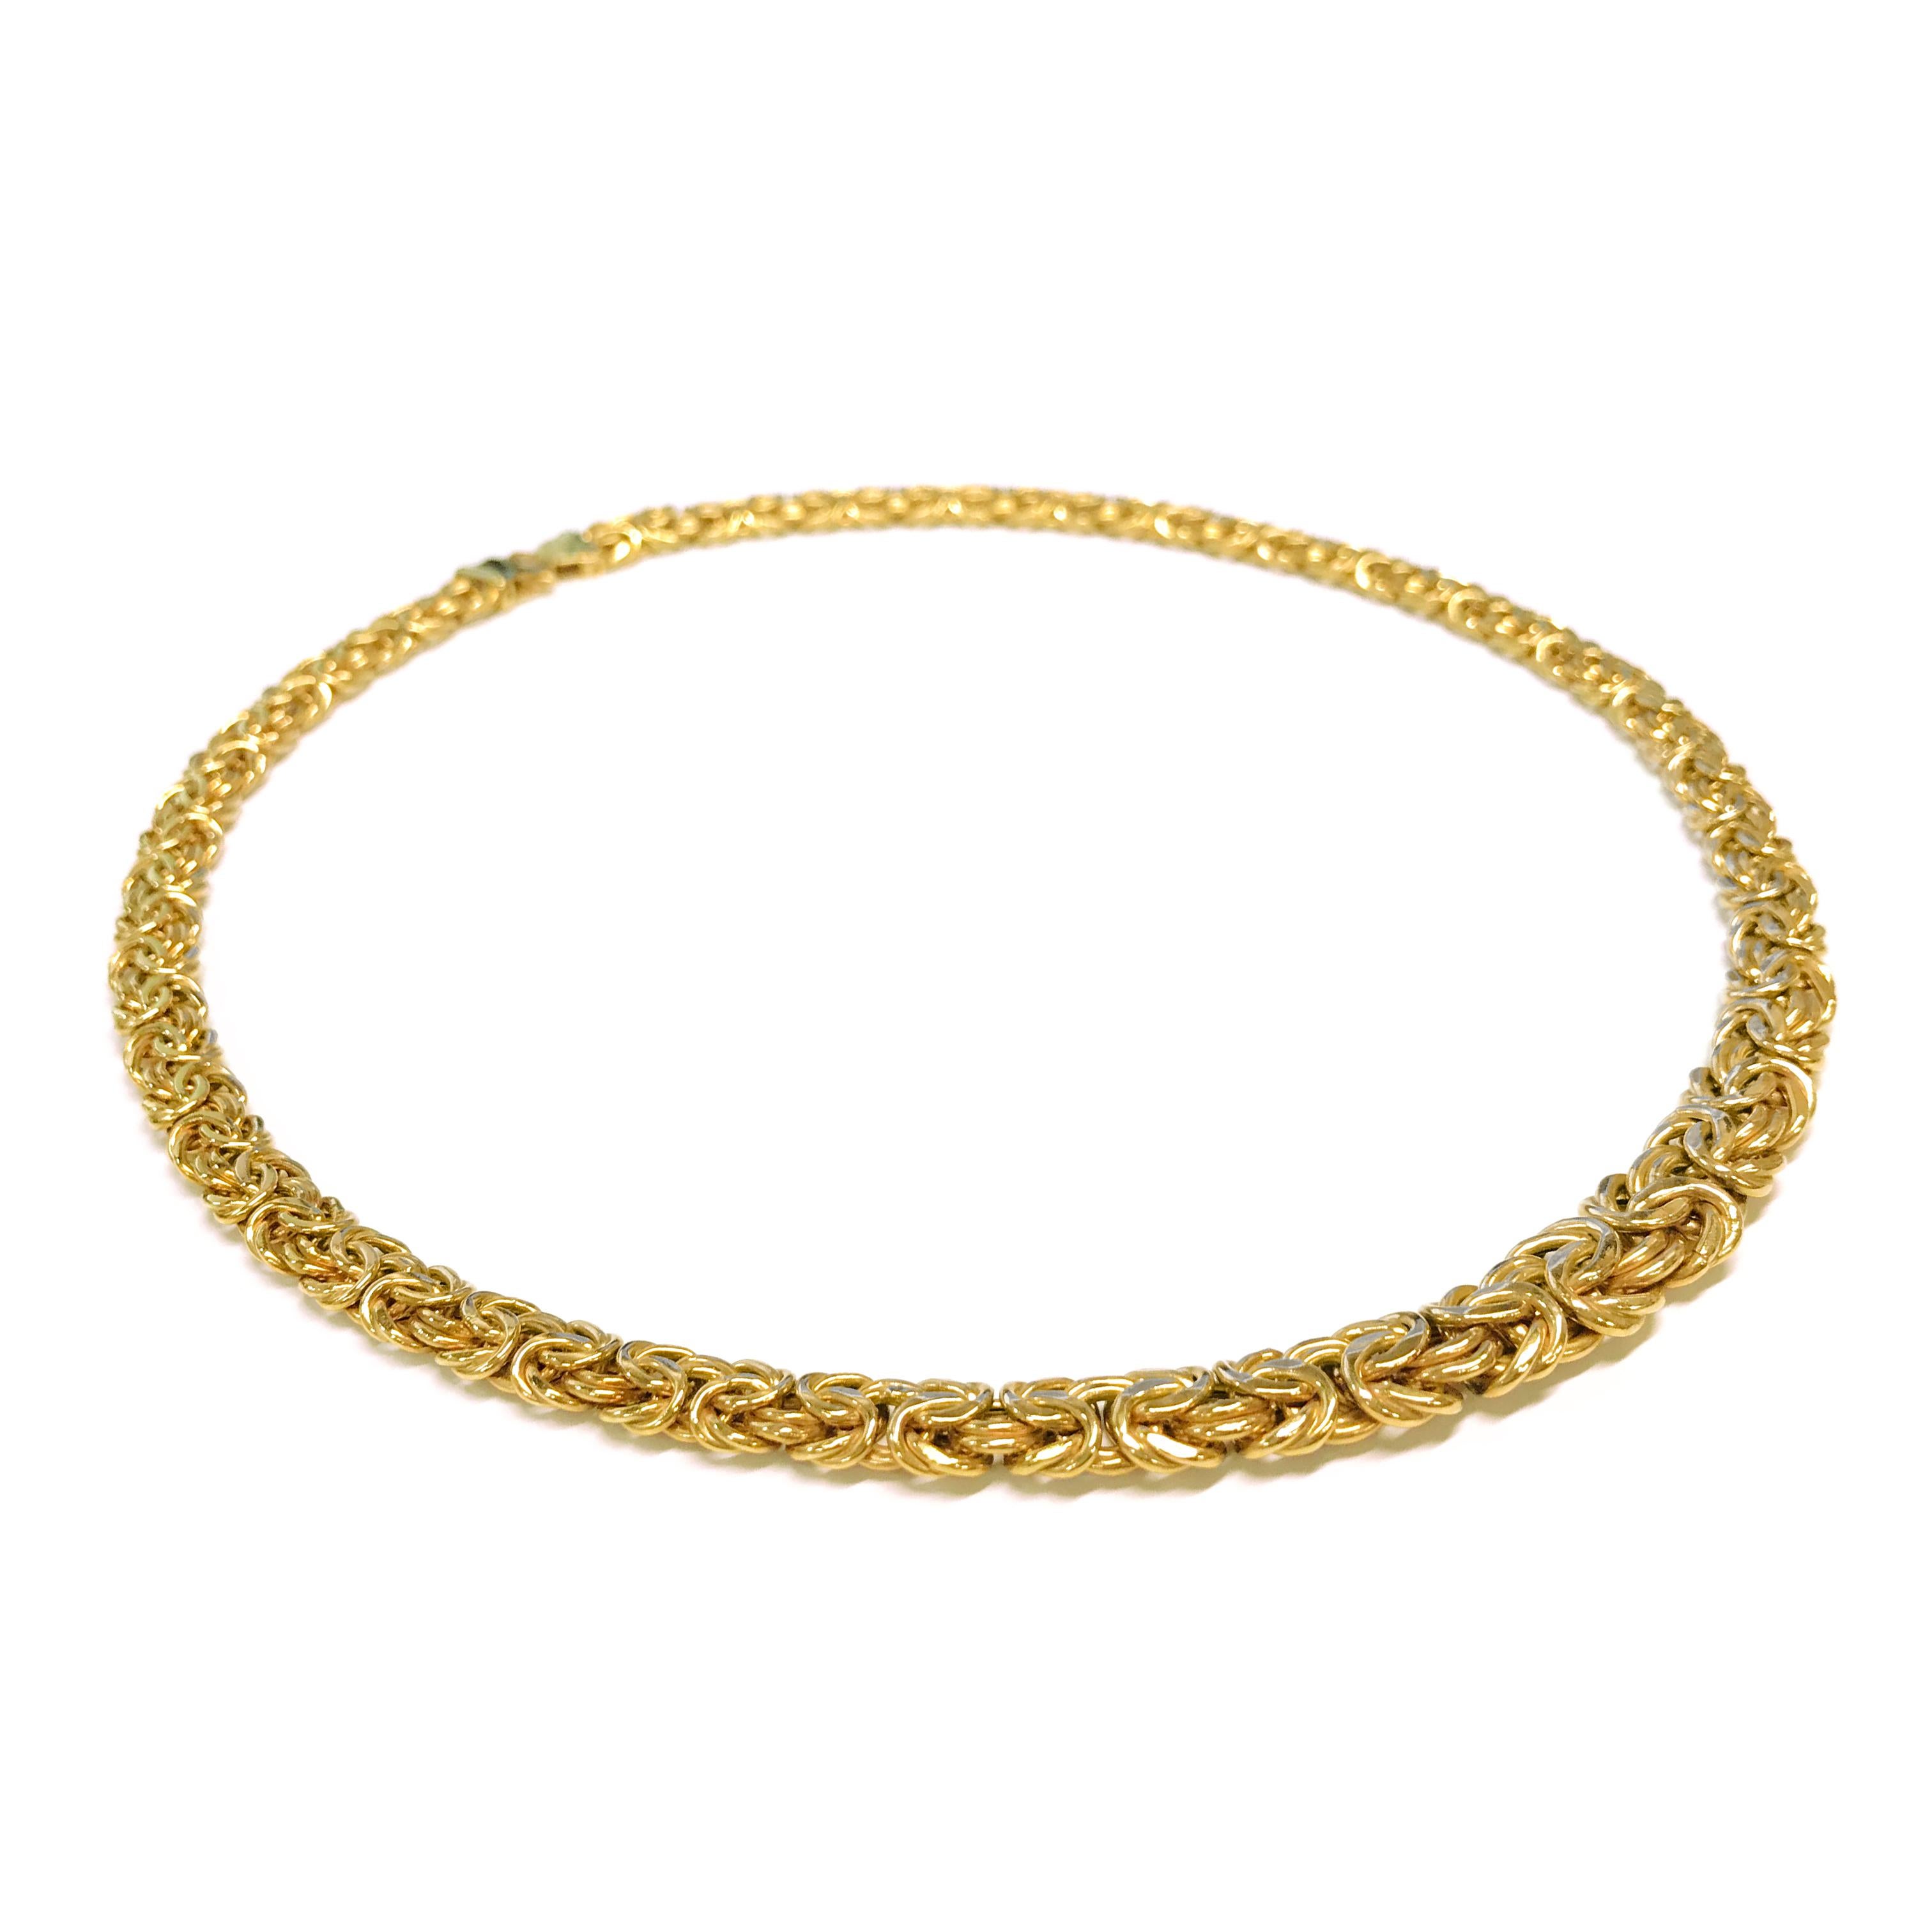 byzantinische Halskette mit Hohlgliedern aus 14 Karat Gold. Die Breite der Halskette verjüngt sich von 7,5 mm bis 10,5 mm. Auf der Rückseite des Verschlusses ist ITALY und 14K eingestanzt. Das Gesamtgewicht des Goldes beträgt 23,4 Gramm und die